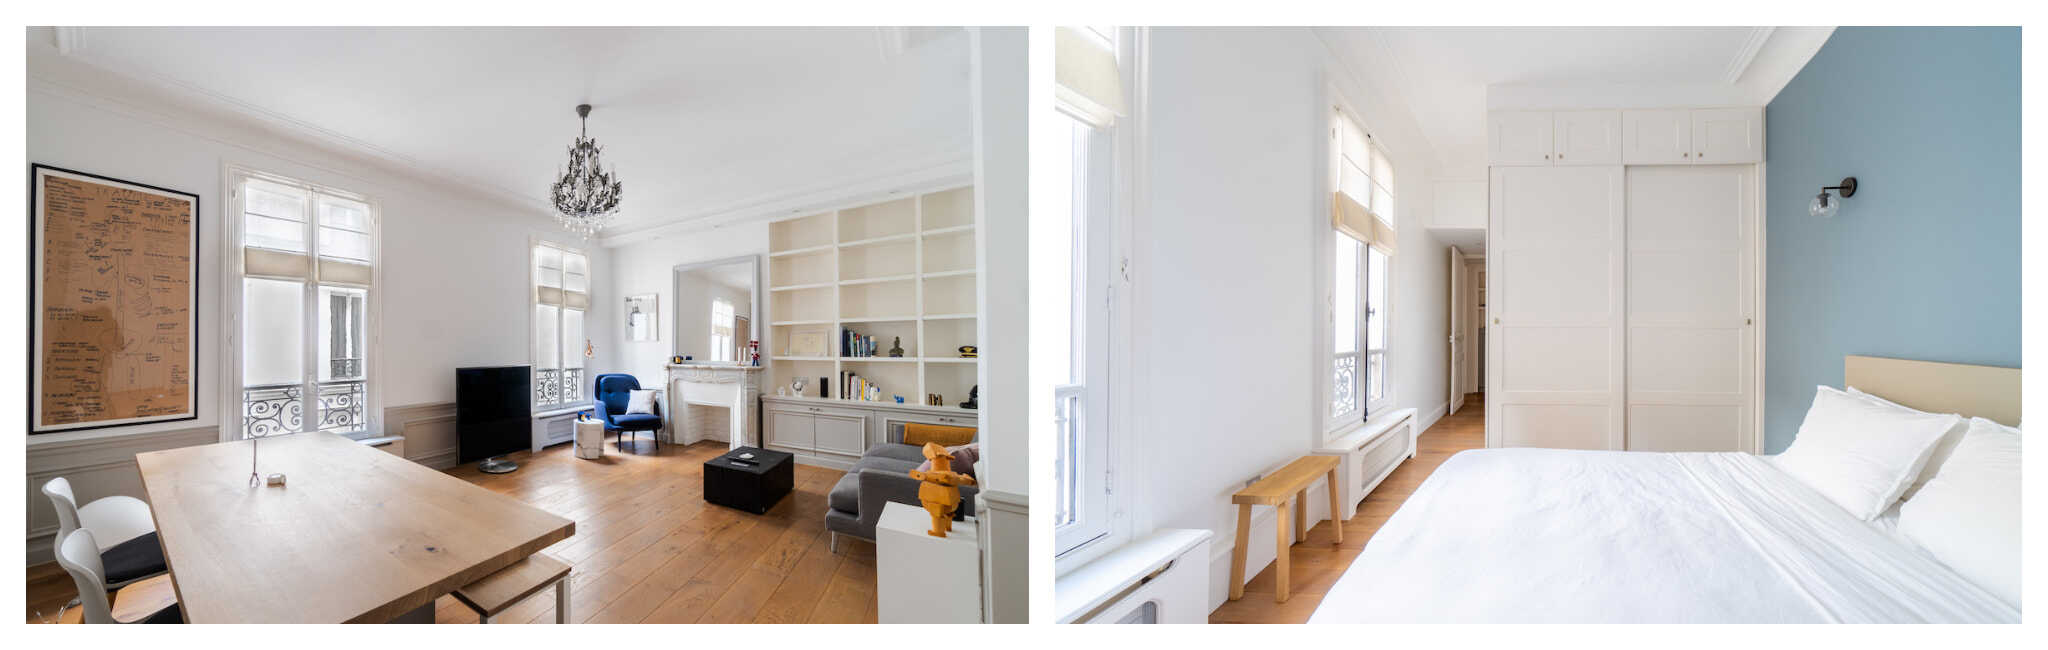 à esquerda: a sala de estar iluminada e arejada de um apartamento parisiense;  à direita: o quarto decorado com cores claras e muita luz natural.